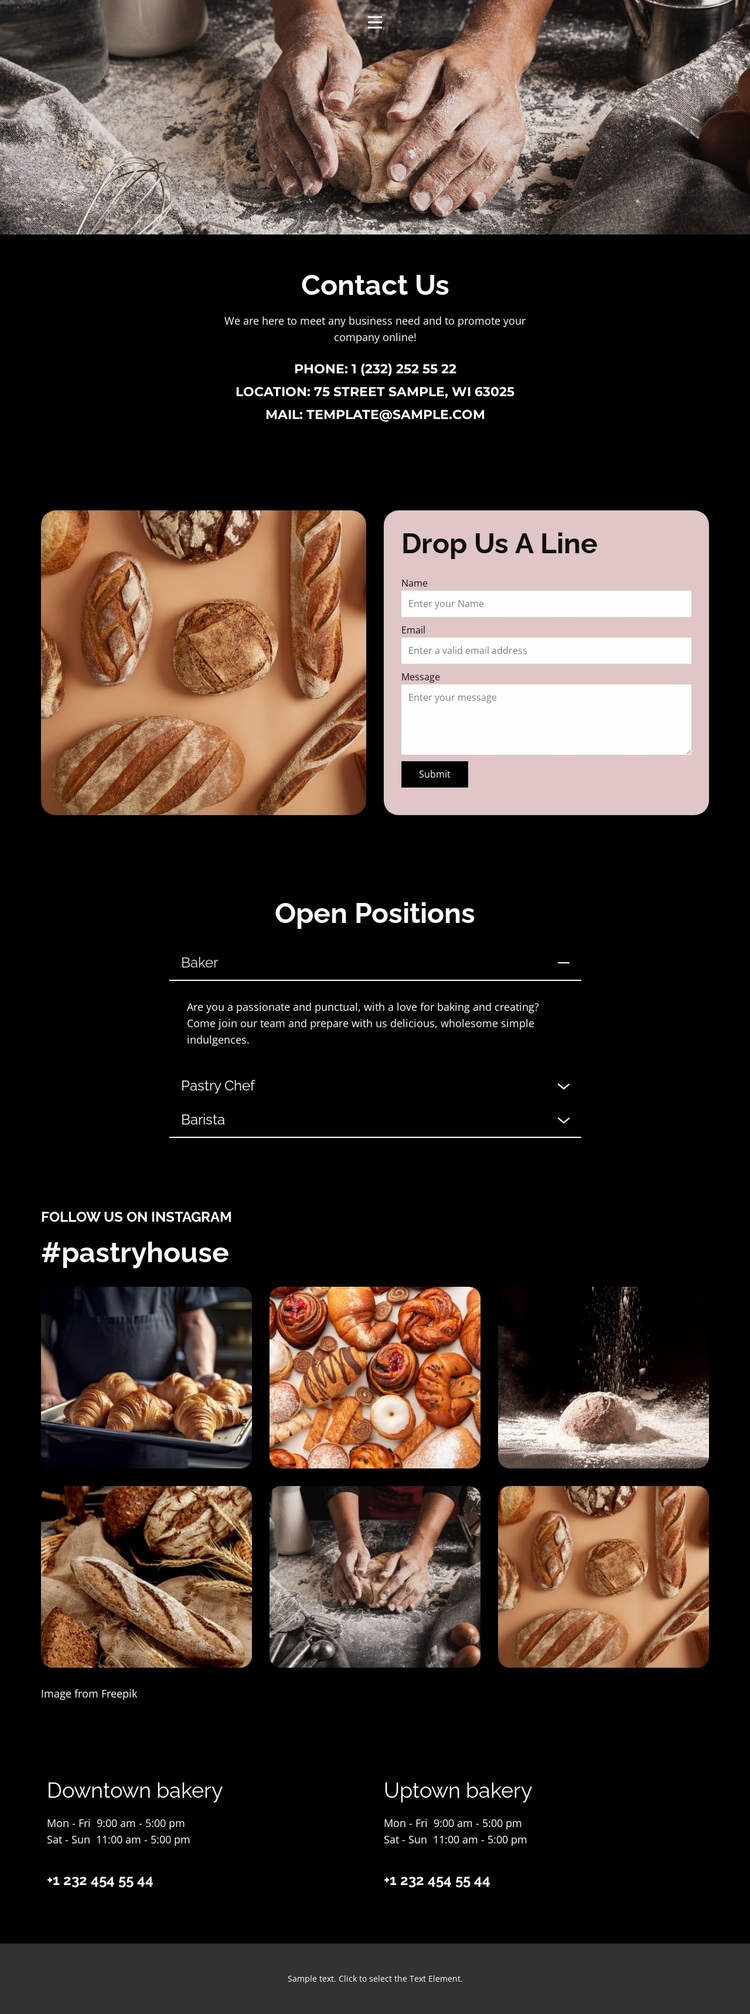 Freshly baked Website Design